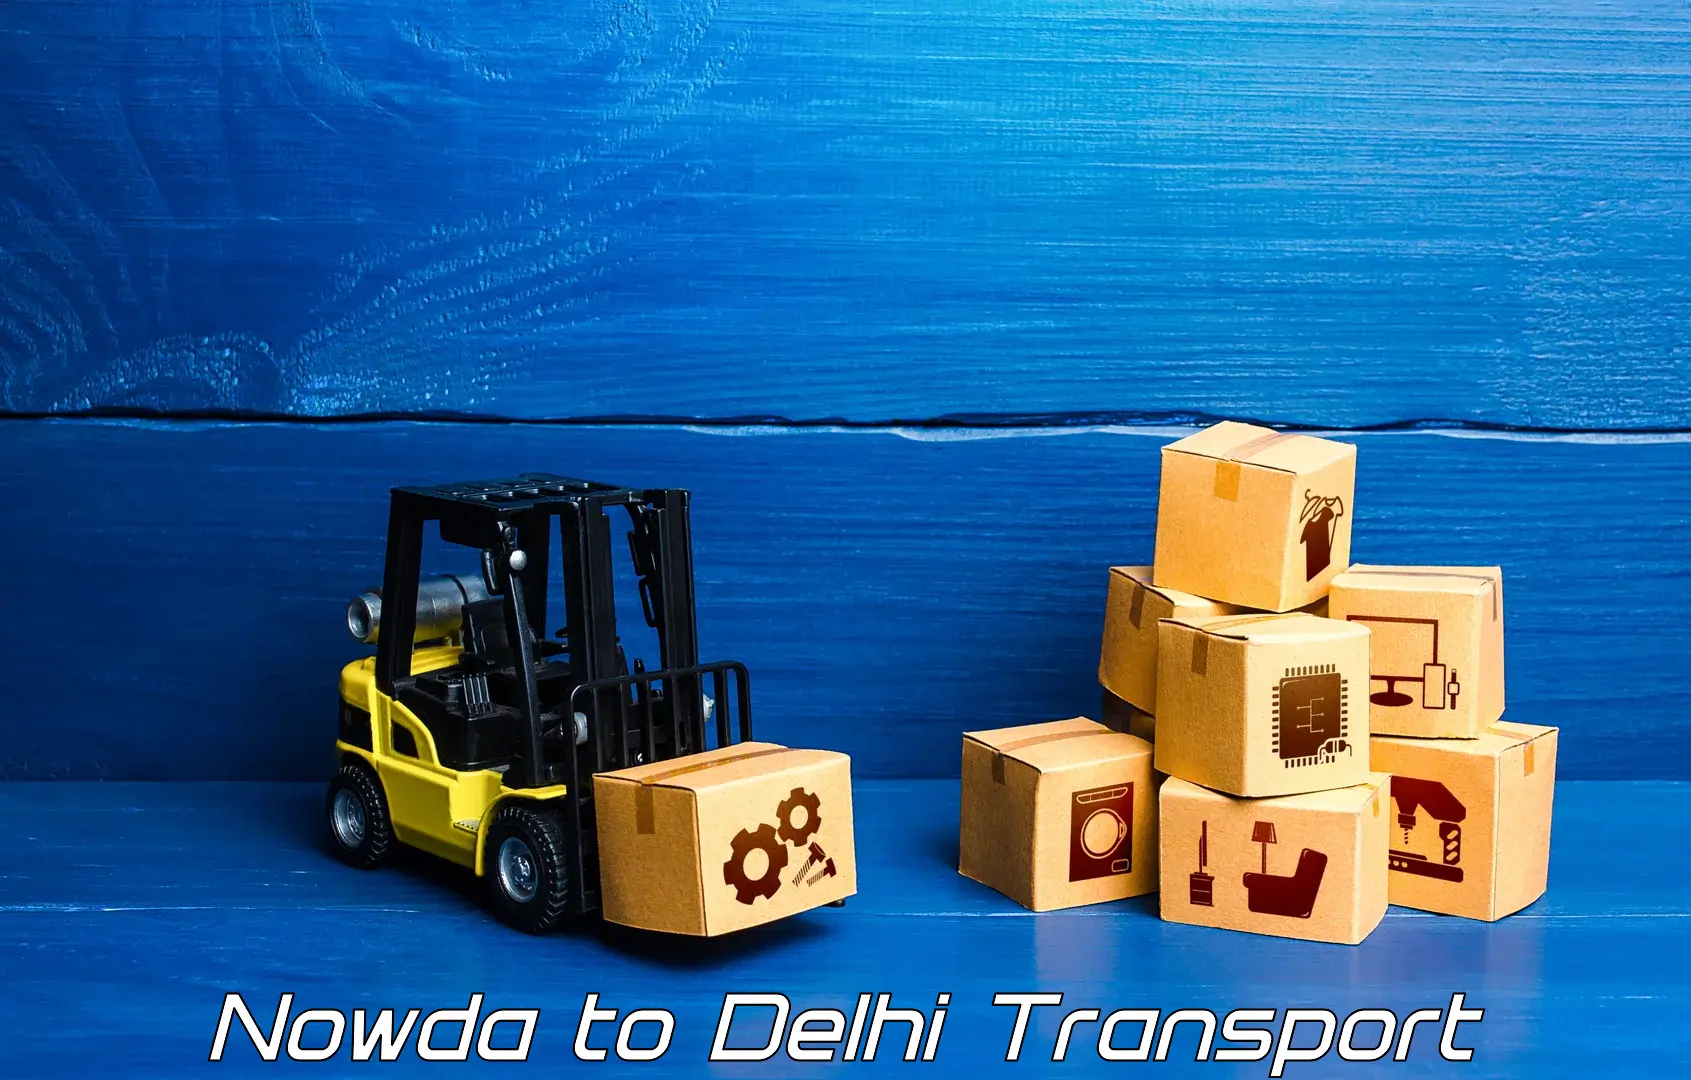 Pick up transport service in Nowda to IIT Delhi